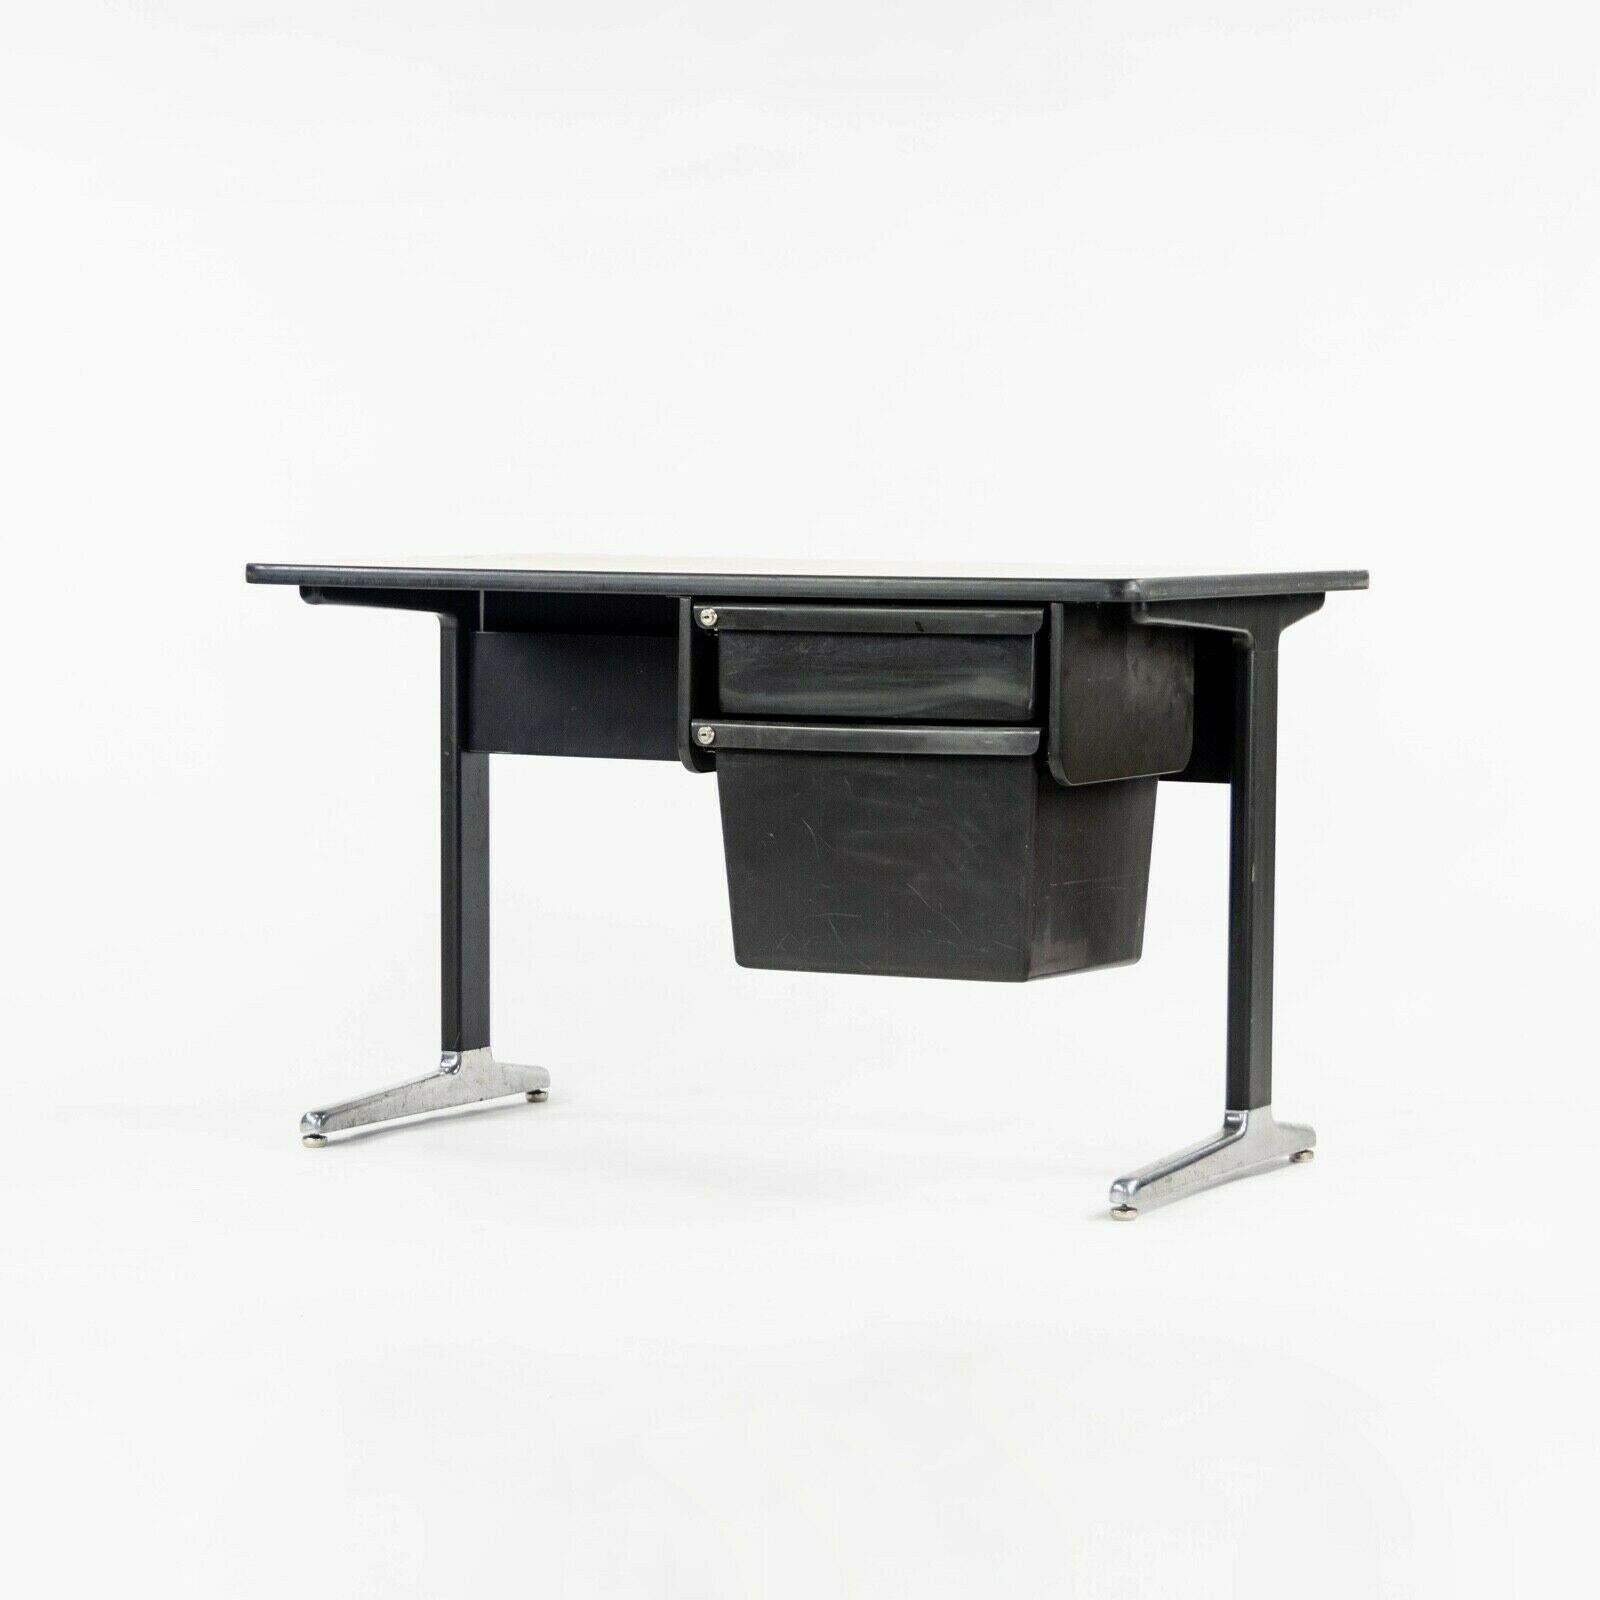 Zum Verkauf steht ein Herman Miller Action Office Schreibtisch aus den 1970er Jahren, entworfen von George Nelson. Dies ist ein klassisches Beispiel für die Arbeit von Nelson, der großen Wert auf Einfachheit und Funktionalität legt. Er hat Beine aus